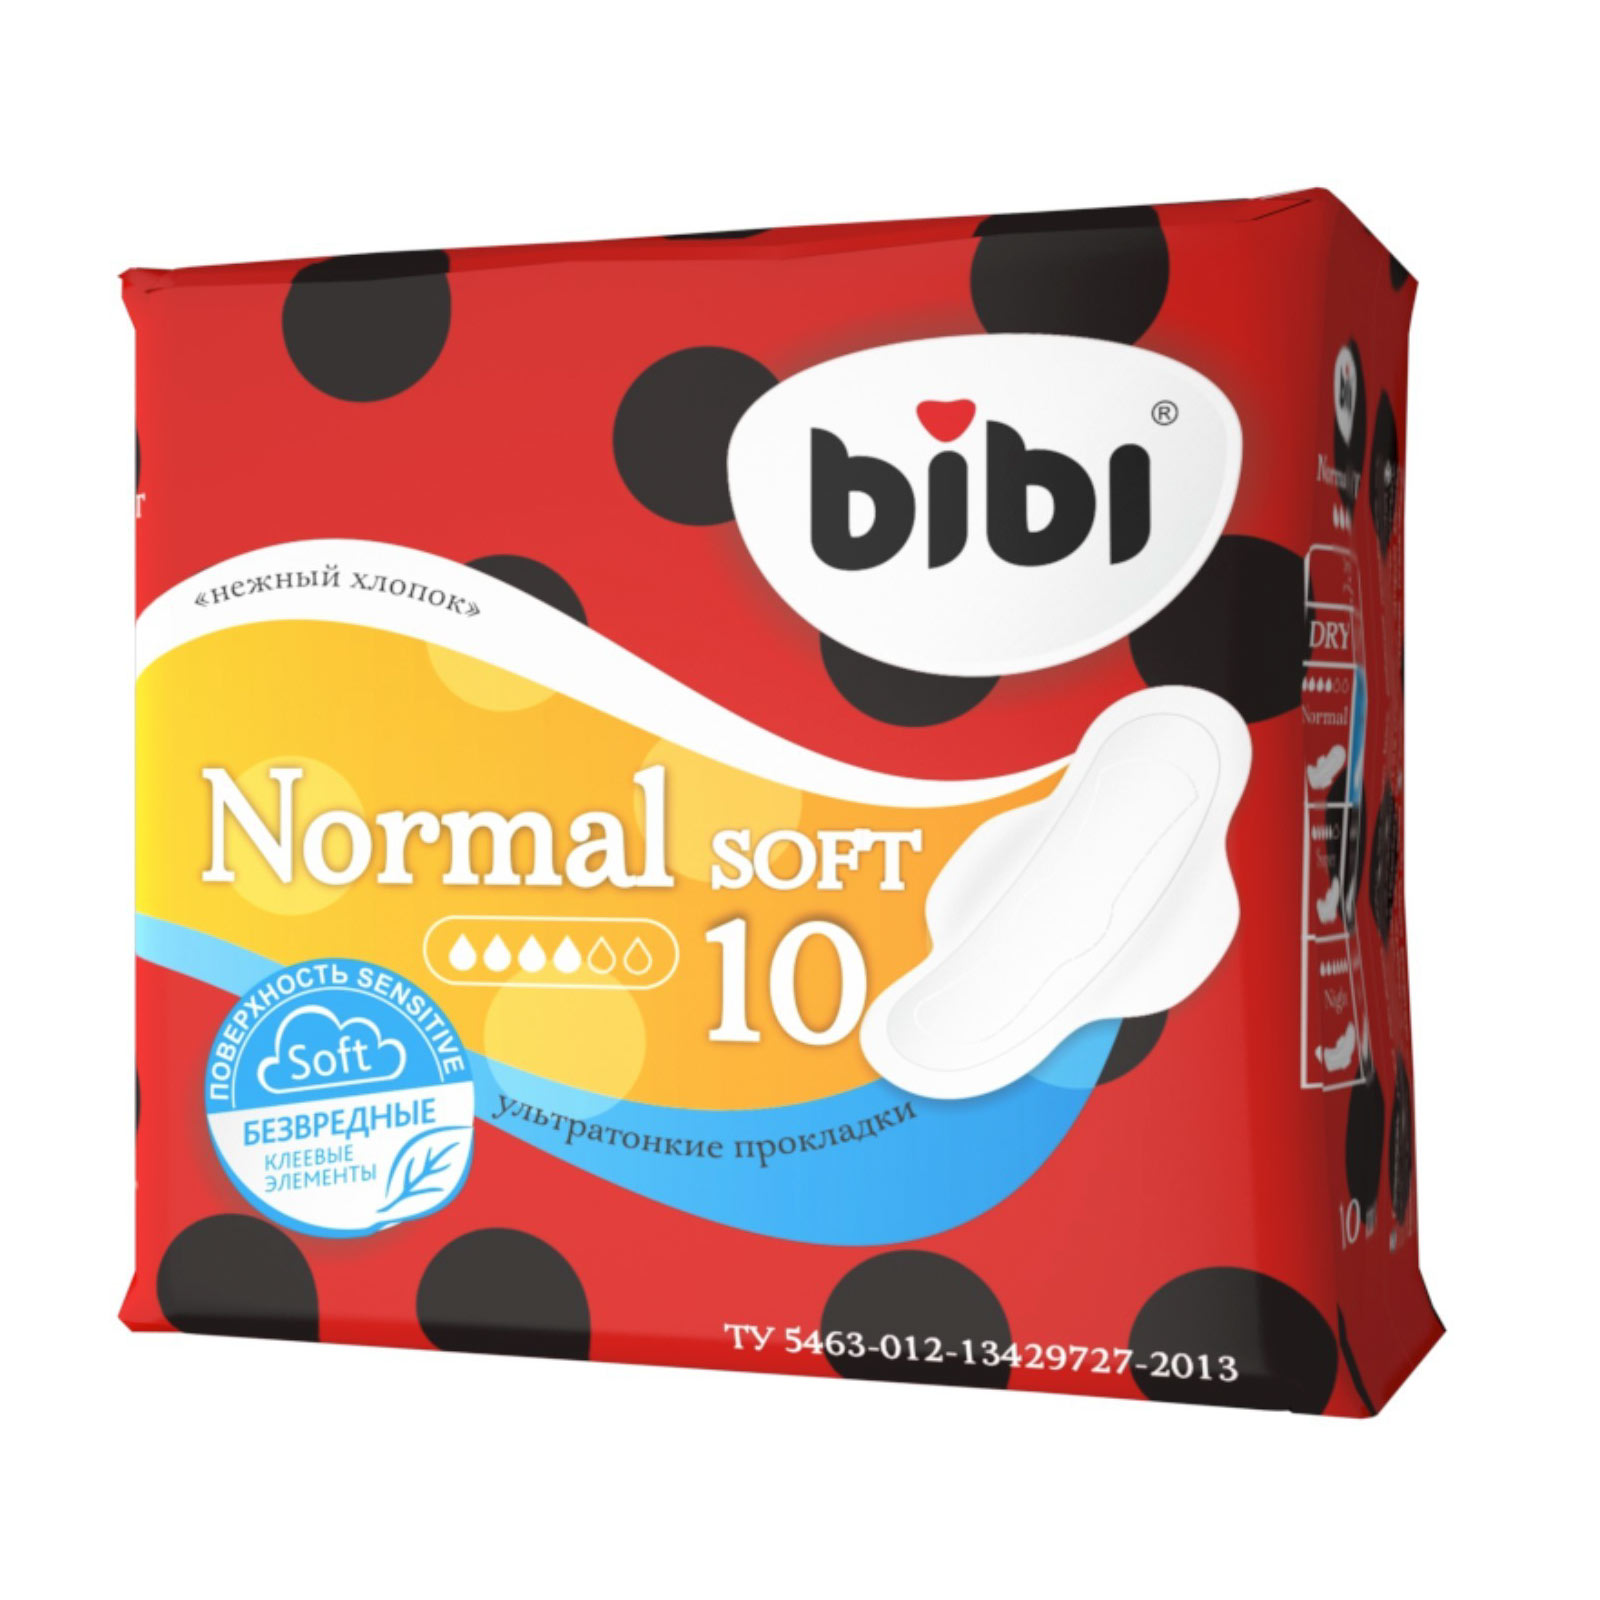 Прокладки Bibi Normal Soft 10 шт